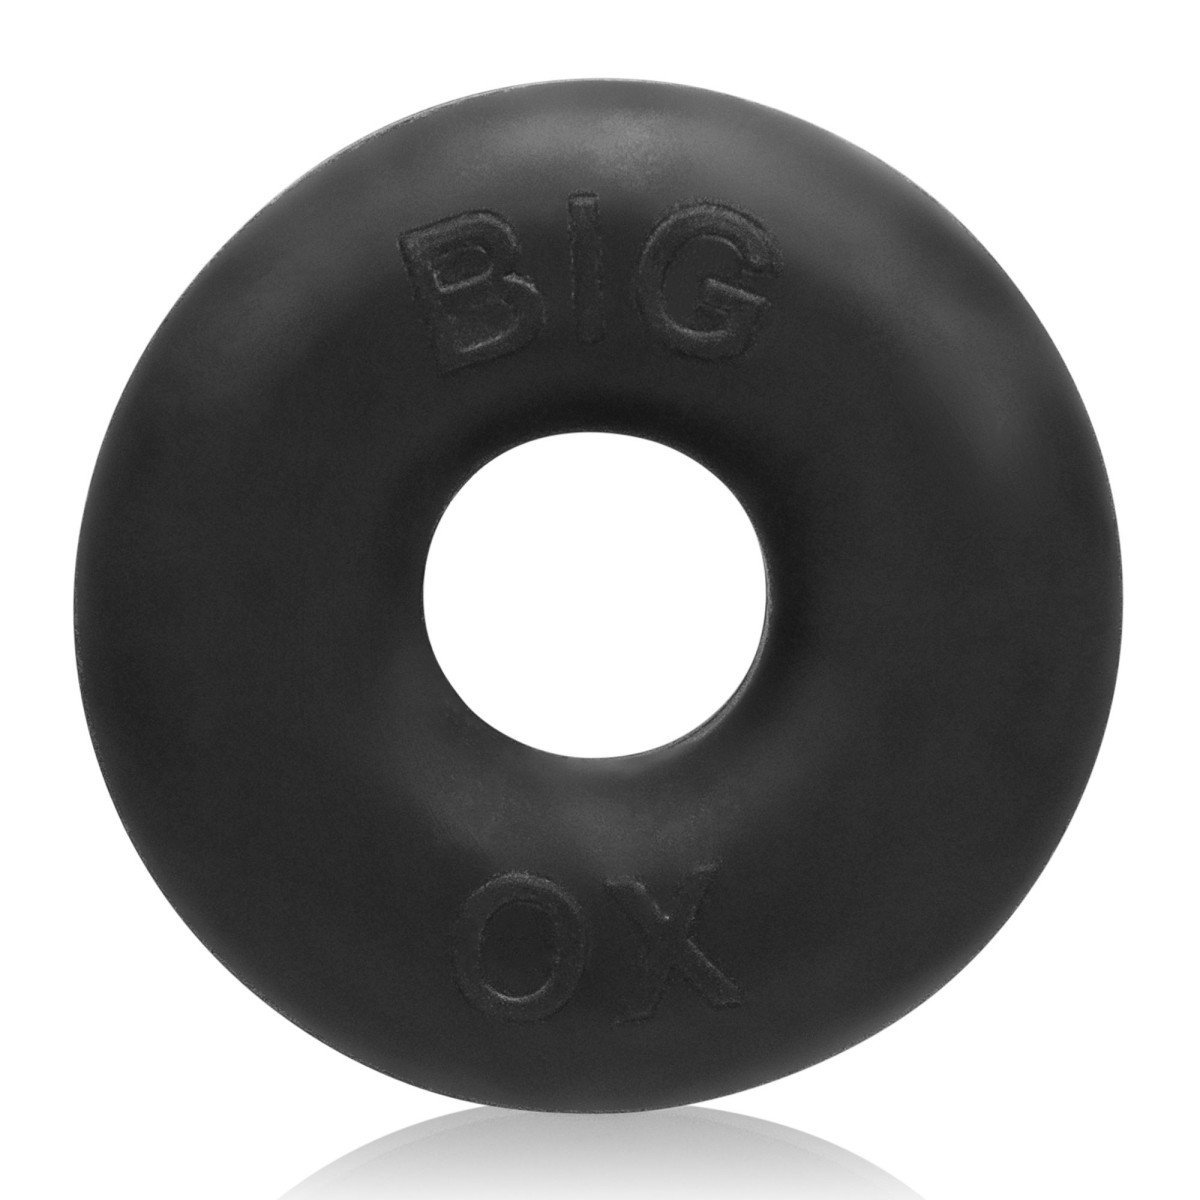 Veľký erekčný krúžok Oxballs Big Ox čierny